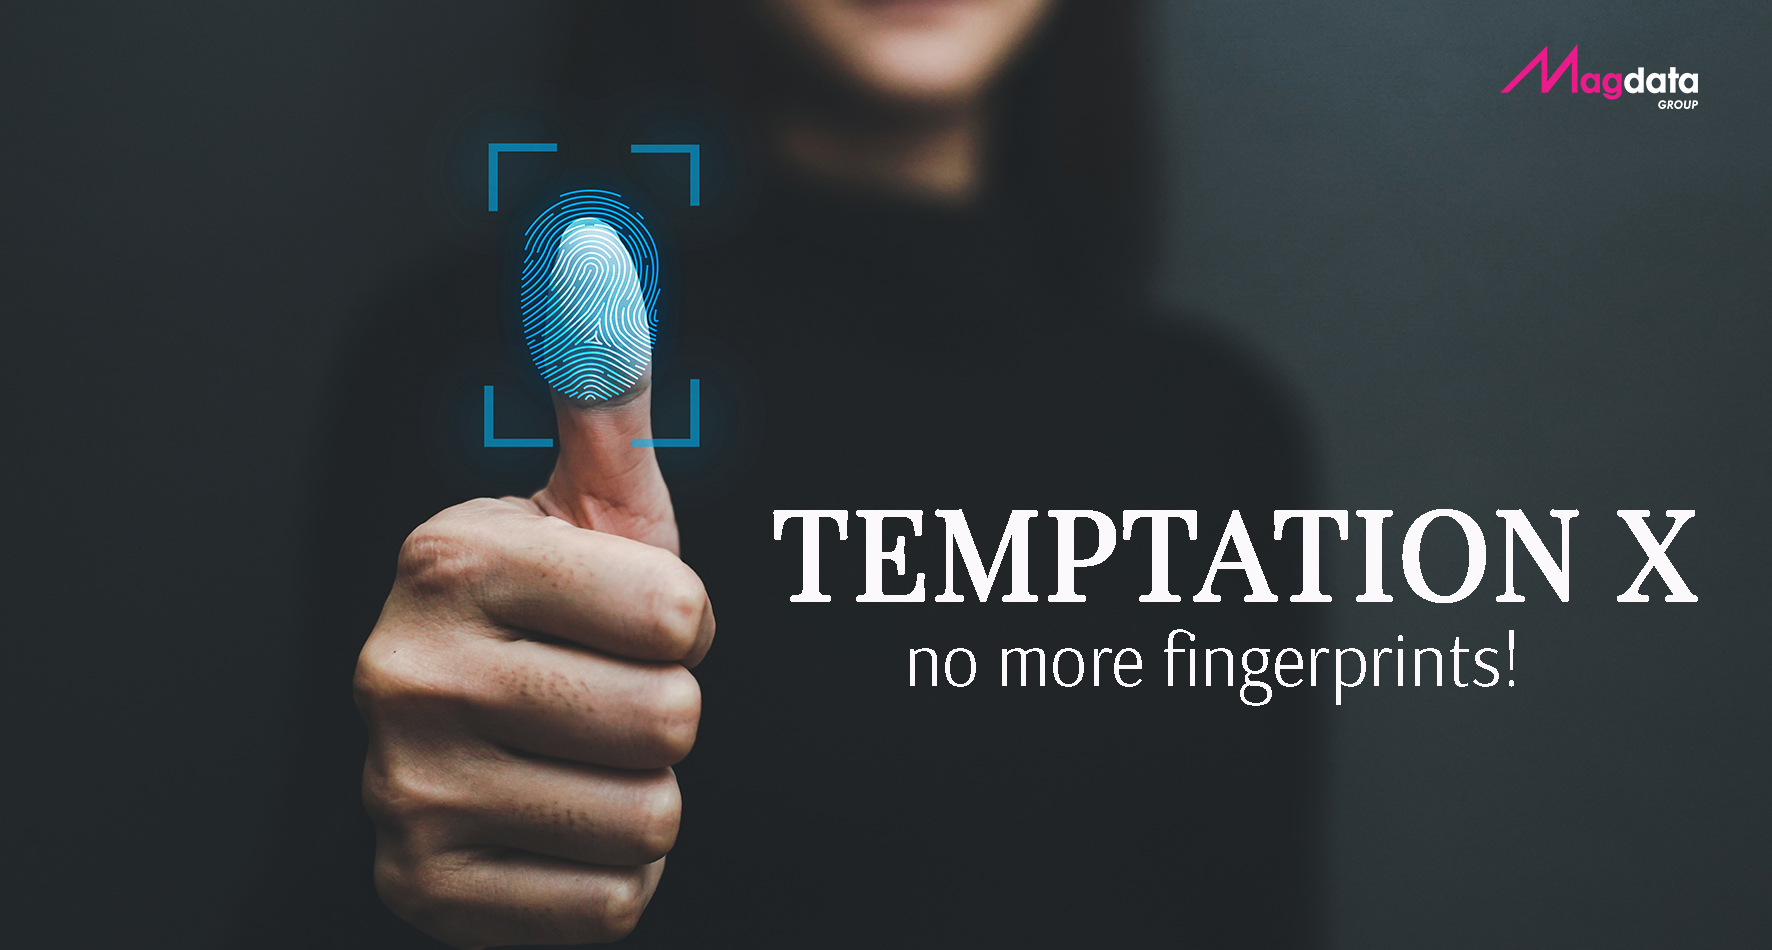 TEMPTATION X: velvet film anti-fingerprints and scratch resistant